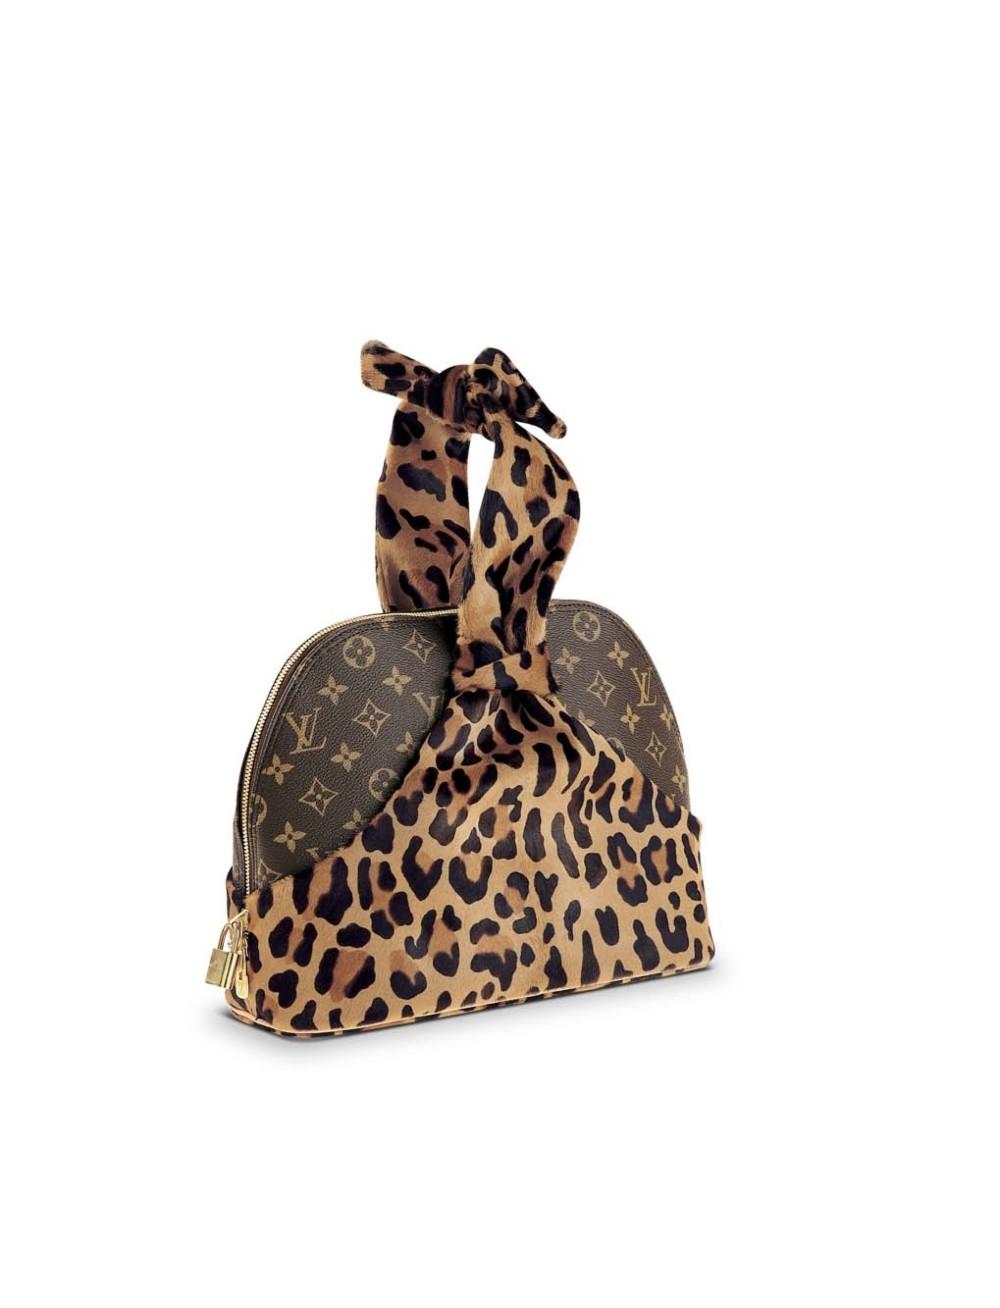 Louis Vuitton, Bags, Louis Vuitton Extremely Rare Bag